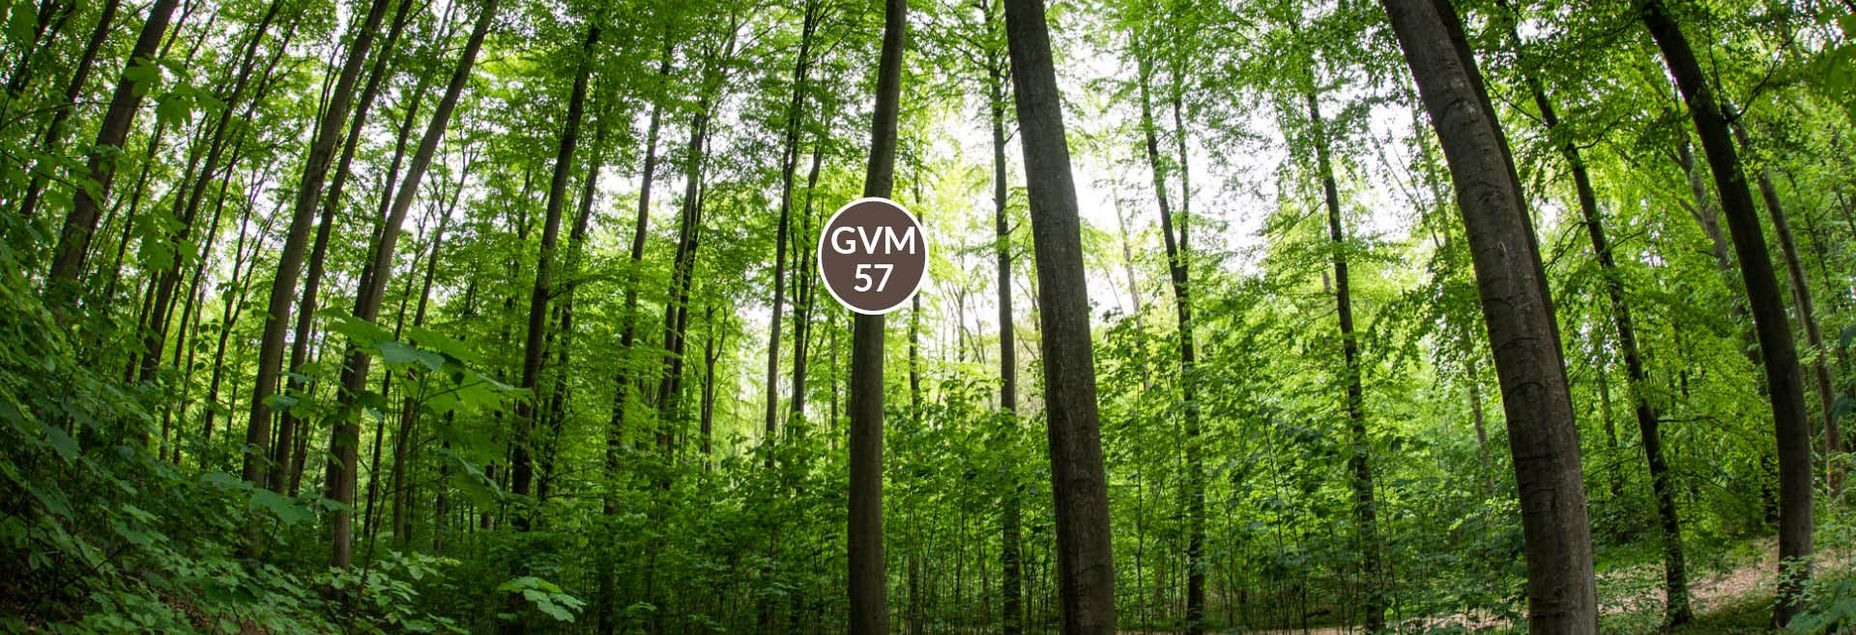 Baum GVM 57 - Fisheyeperspektive